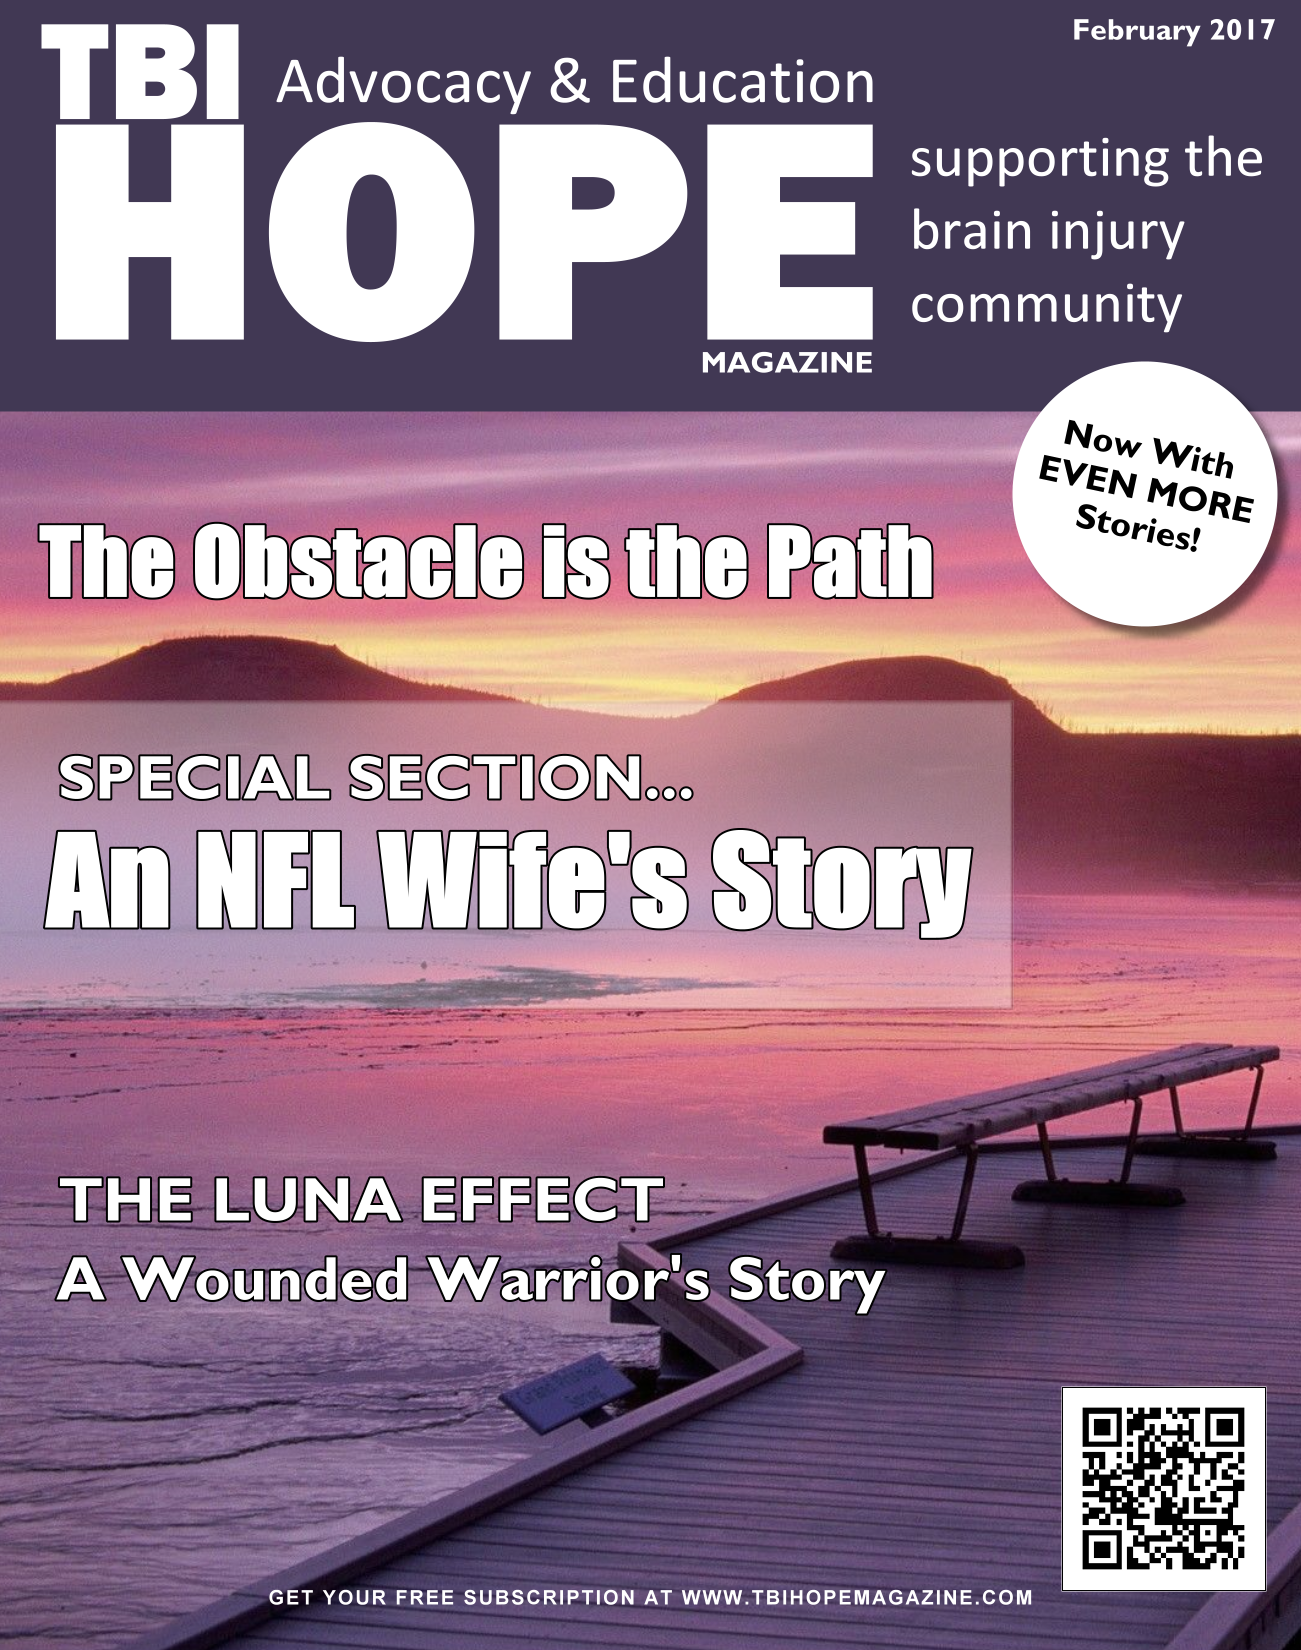 February 2017 Brain Injury Magazine